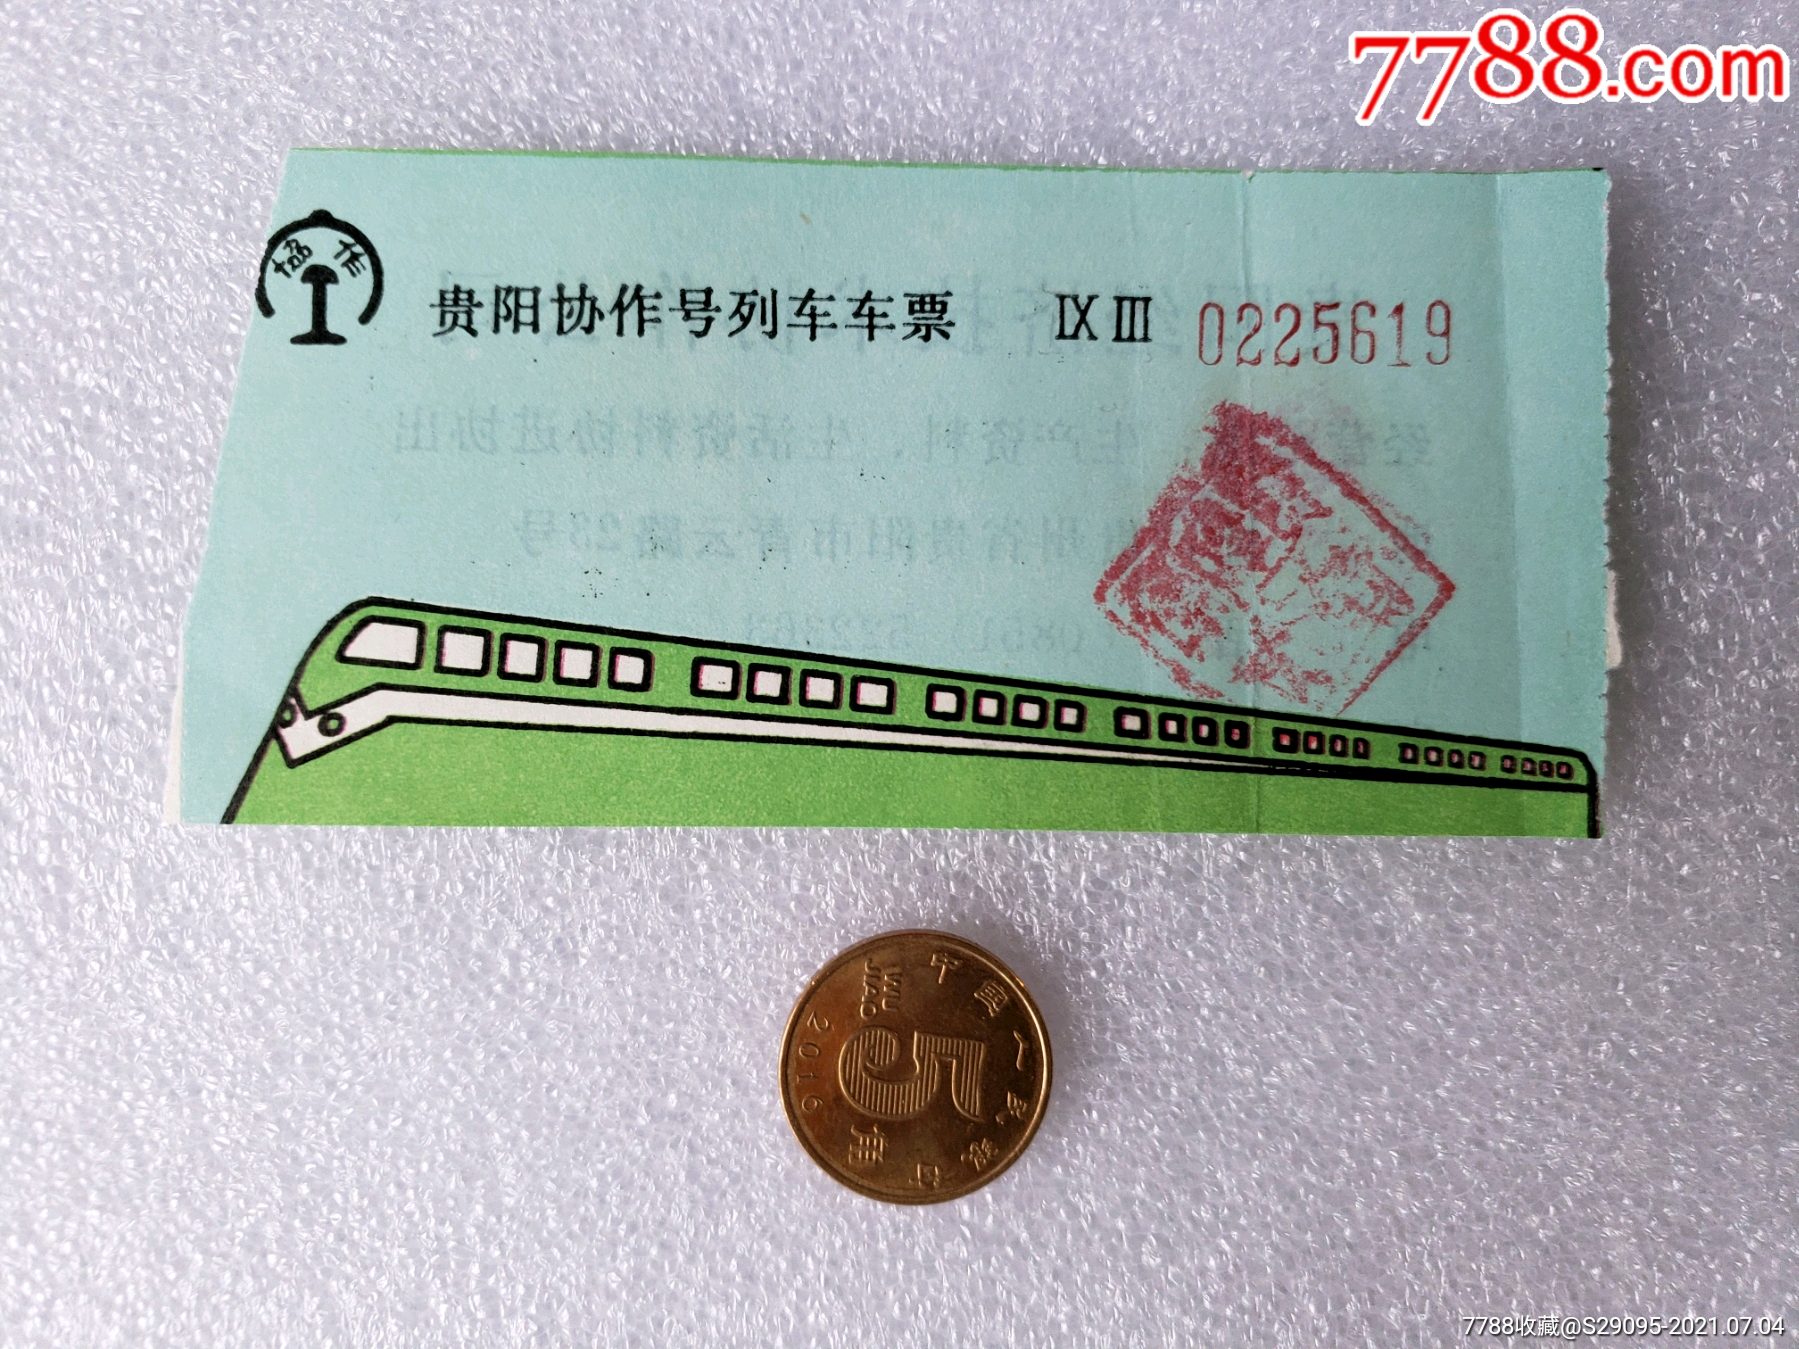 上海一贵阳-价格:10元-au34873214-火车票 -加价-7788收藏__收藏热线